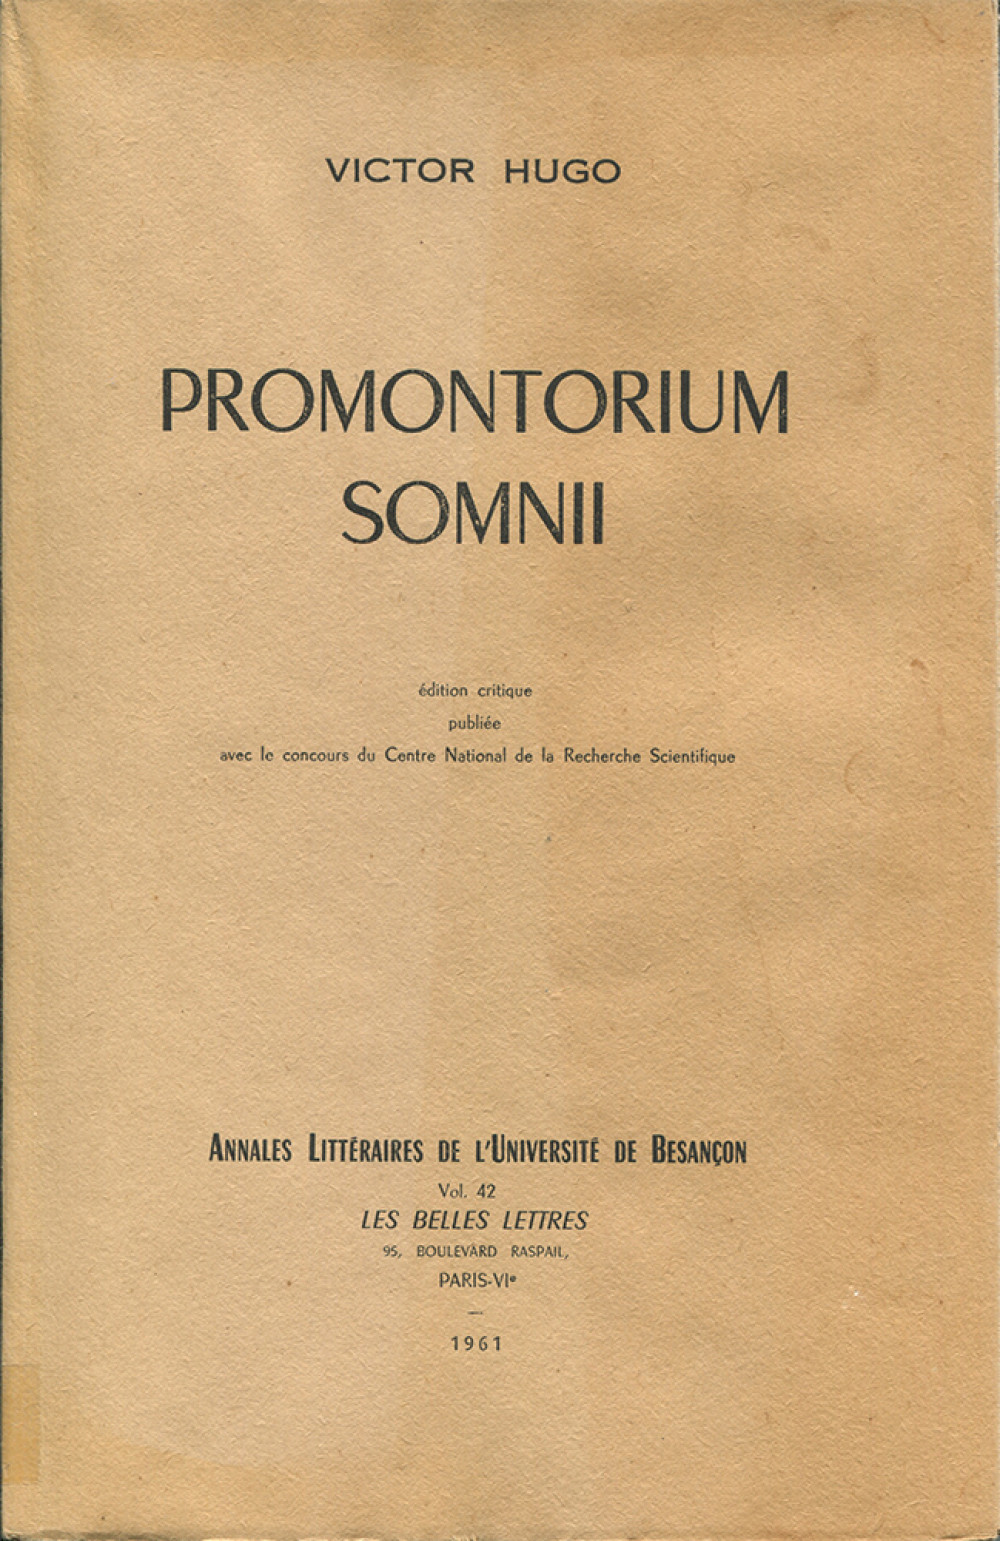 Promontorium Somnii de Victor Hugo